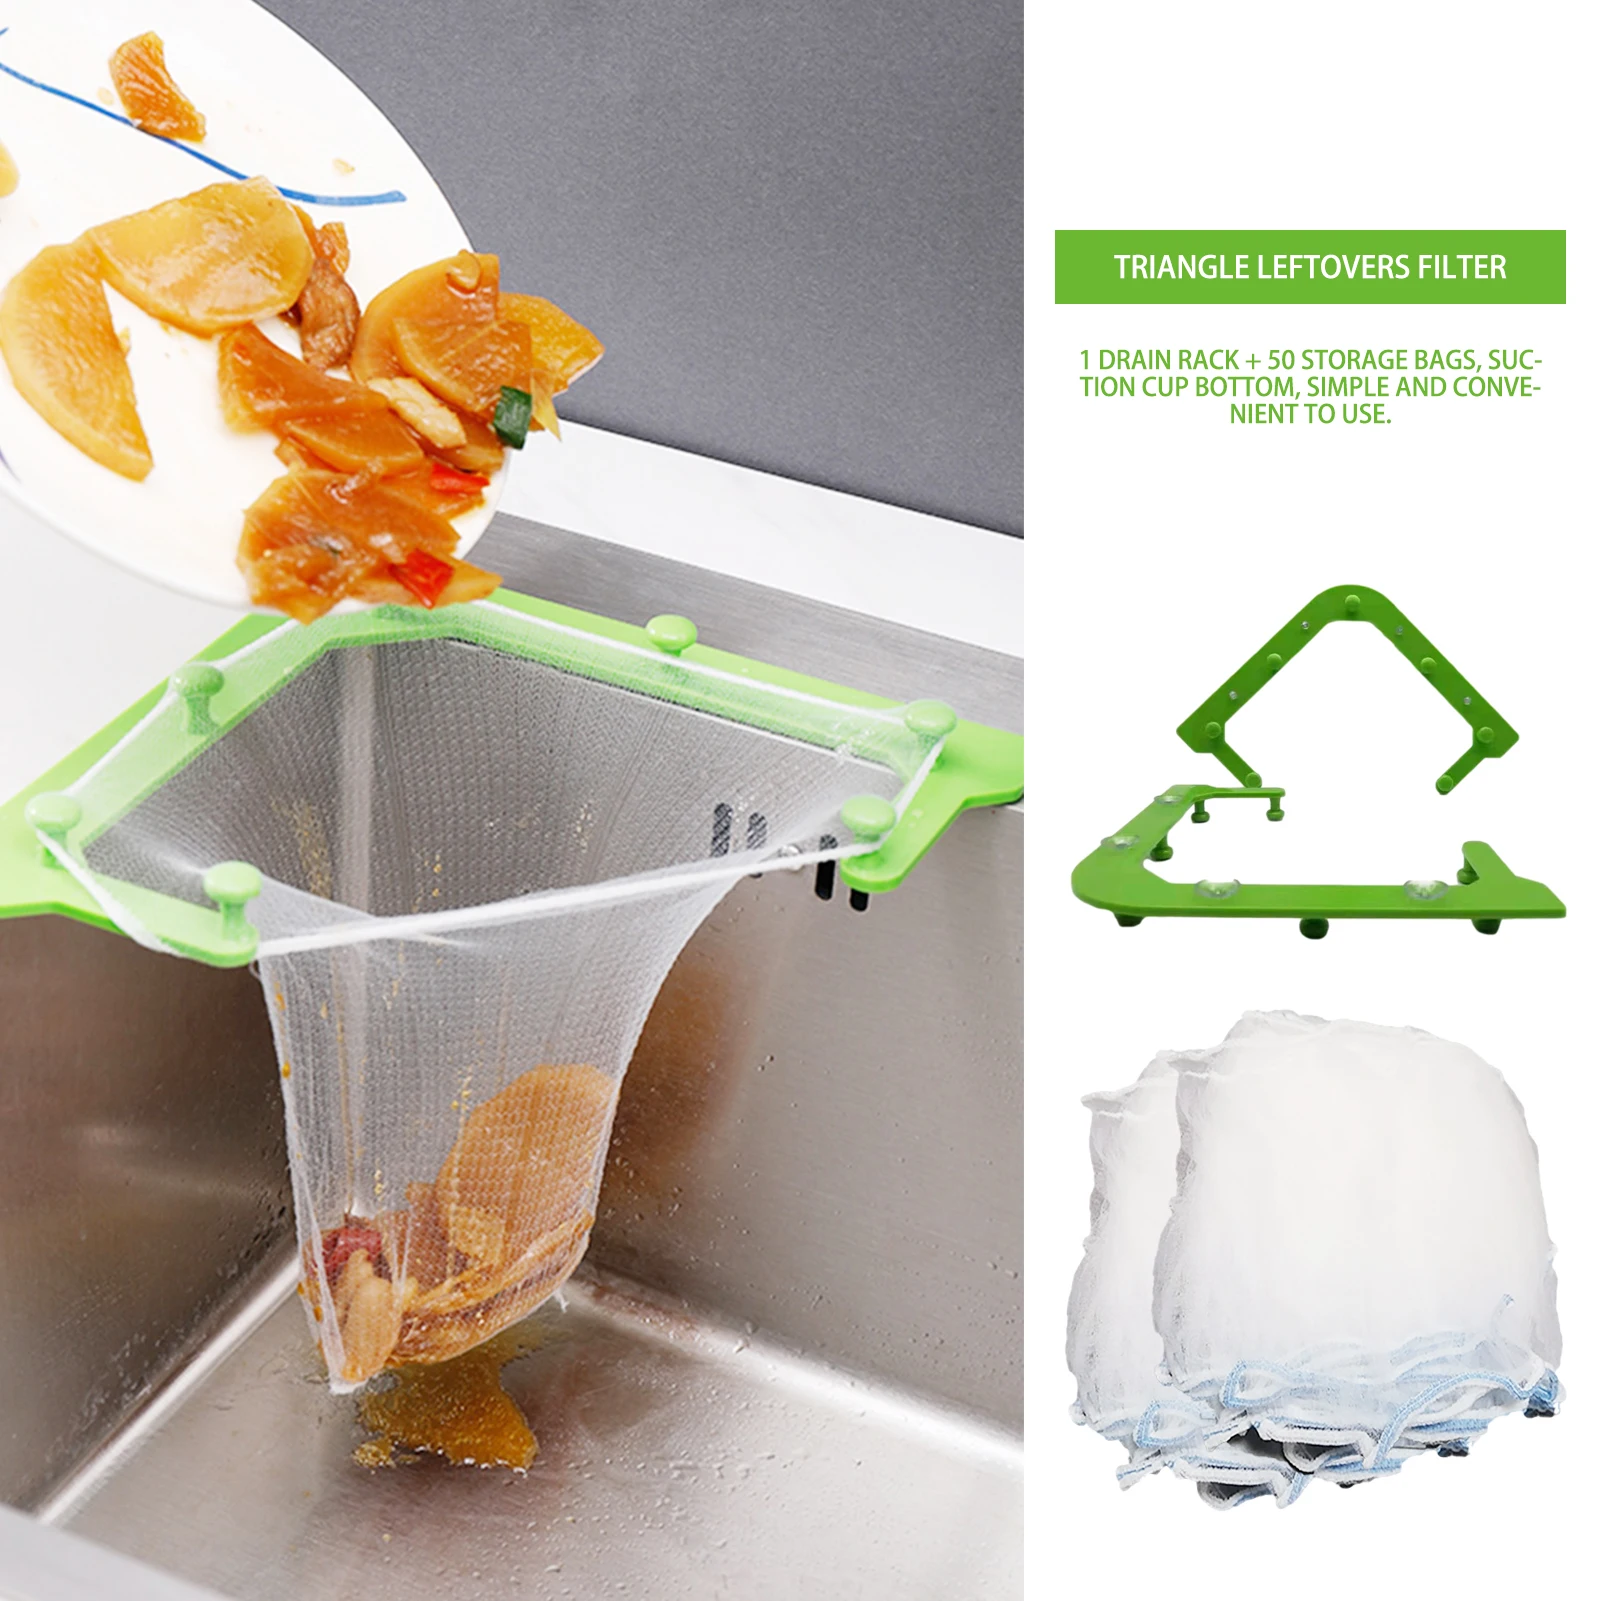 Deux Paquets ,Beige TYQGKX Ordures Sink Filtrer Panier évier de Cuisine Panier de Rangement Triangle Saisir efficacement Les déchets Alimentaires et déchets ordinaires 